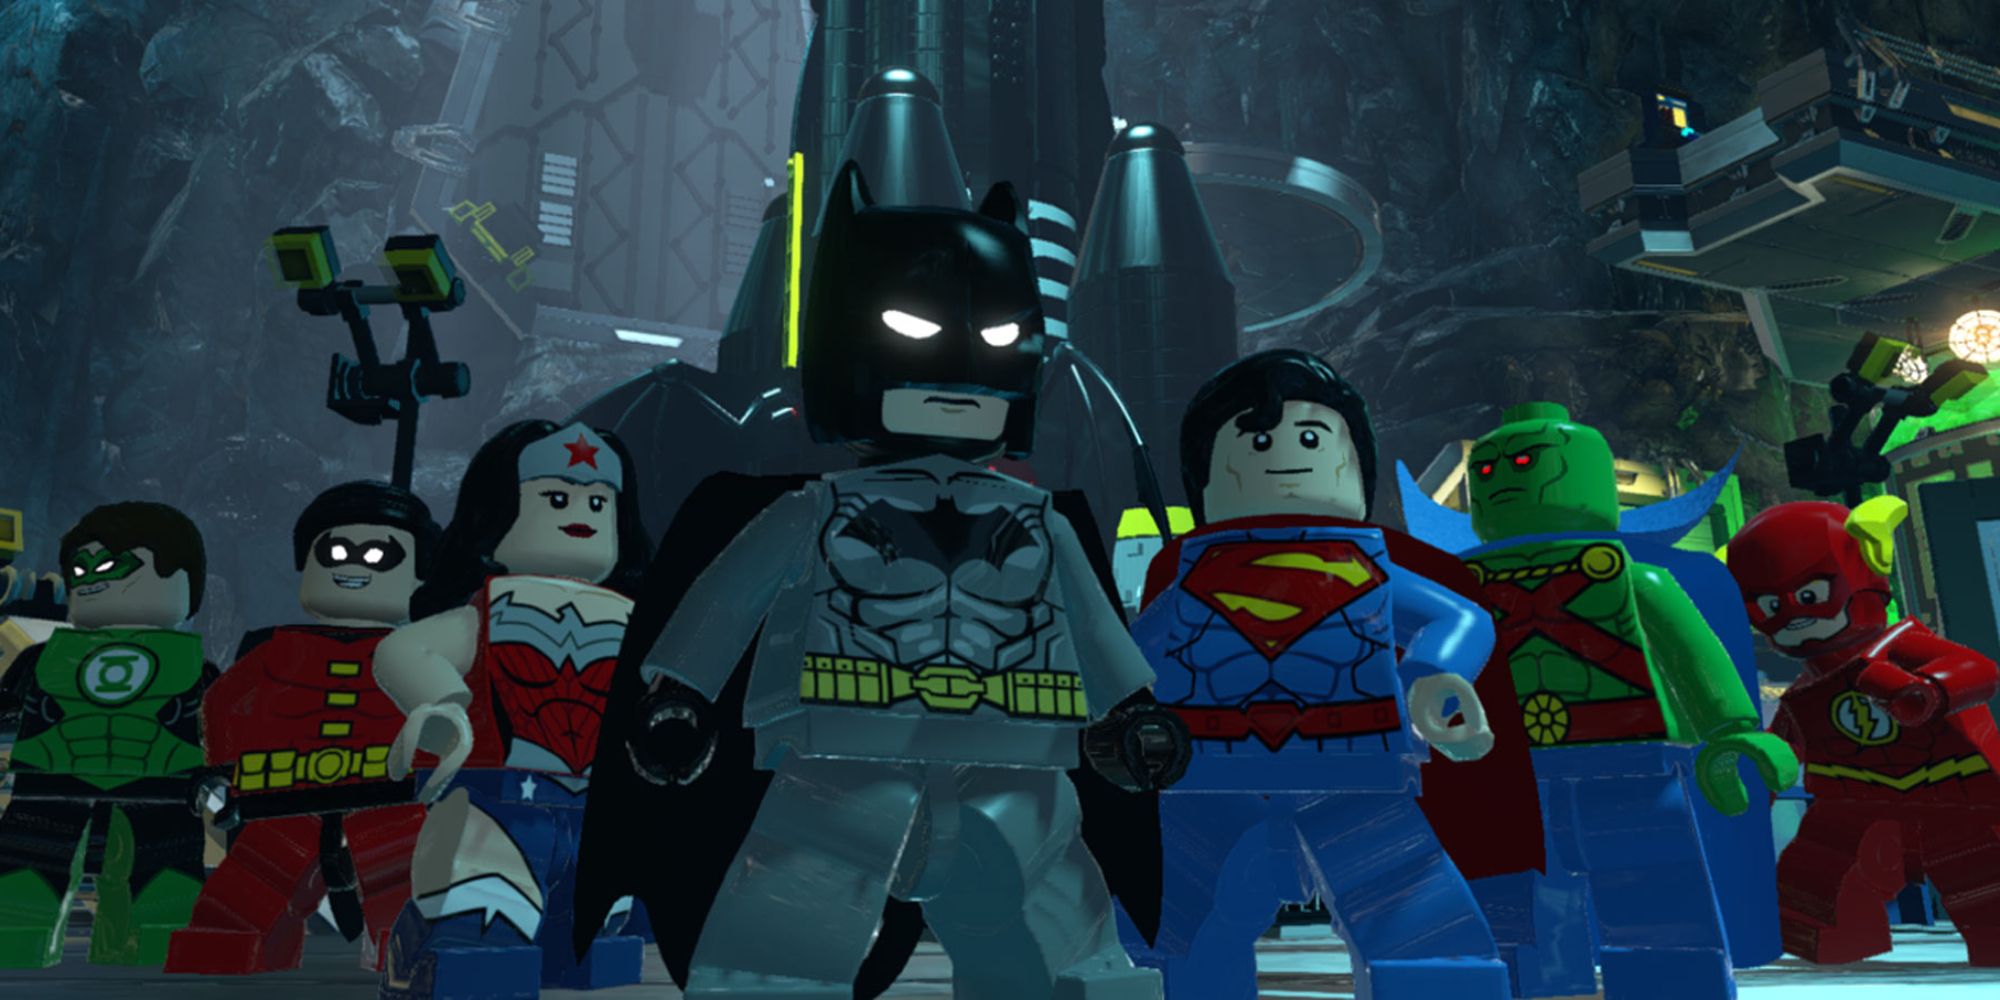 Lego Batman 3 Beyond Gotham Screenshot Of Justice League In Lego Form